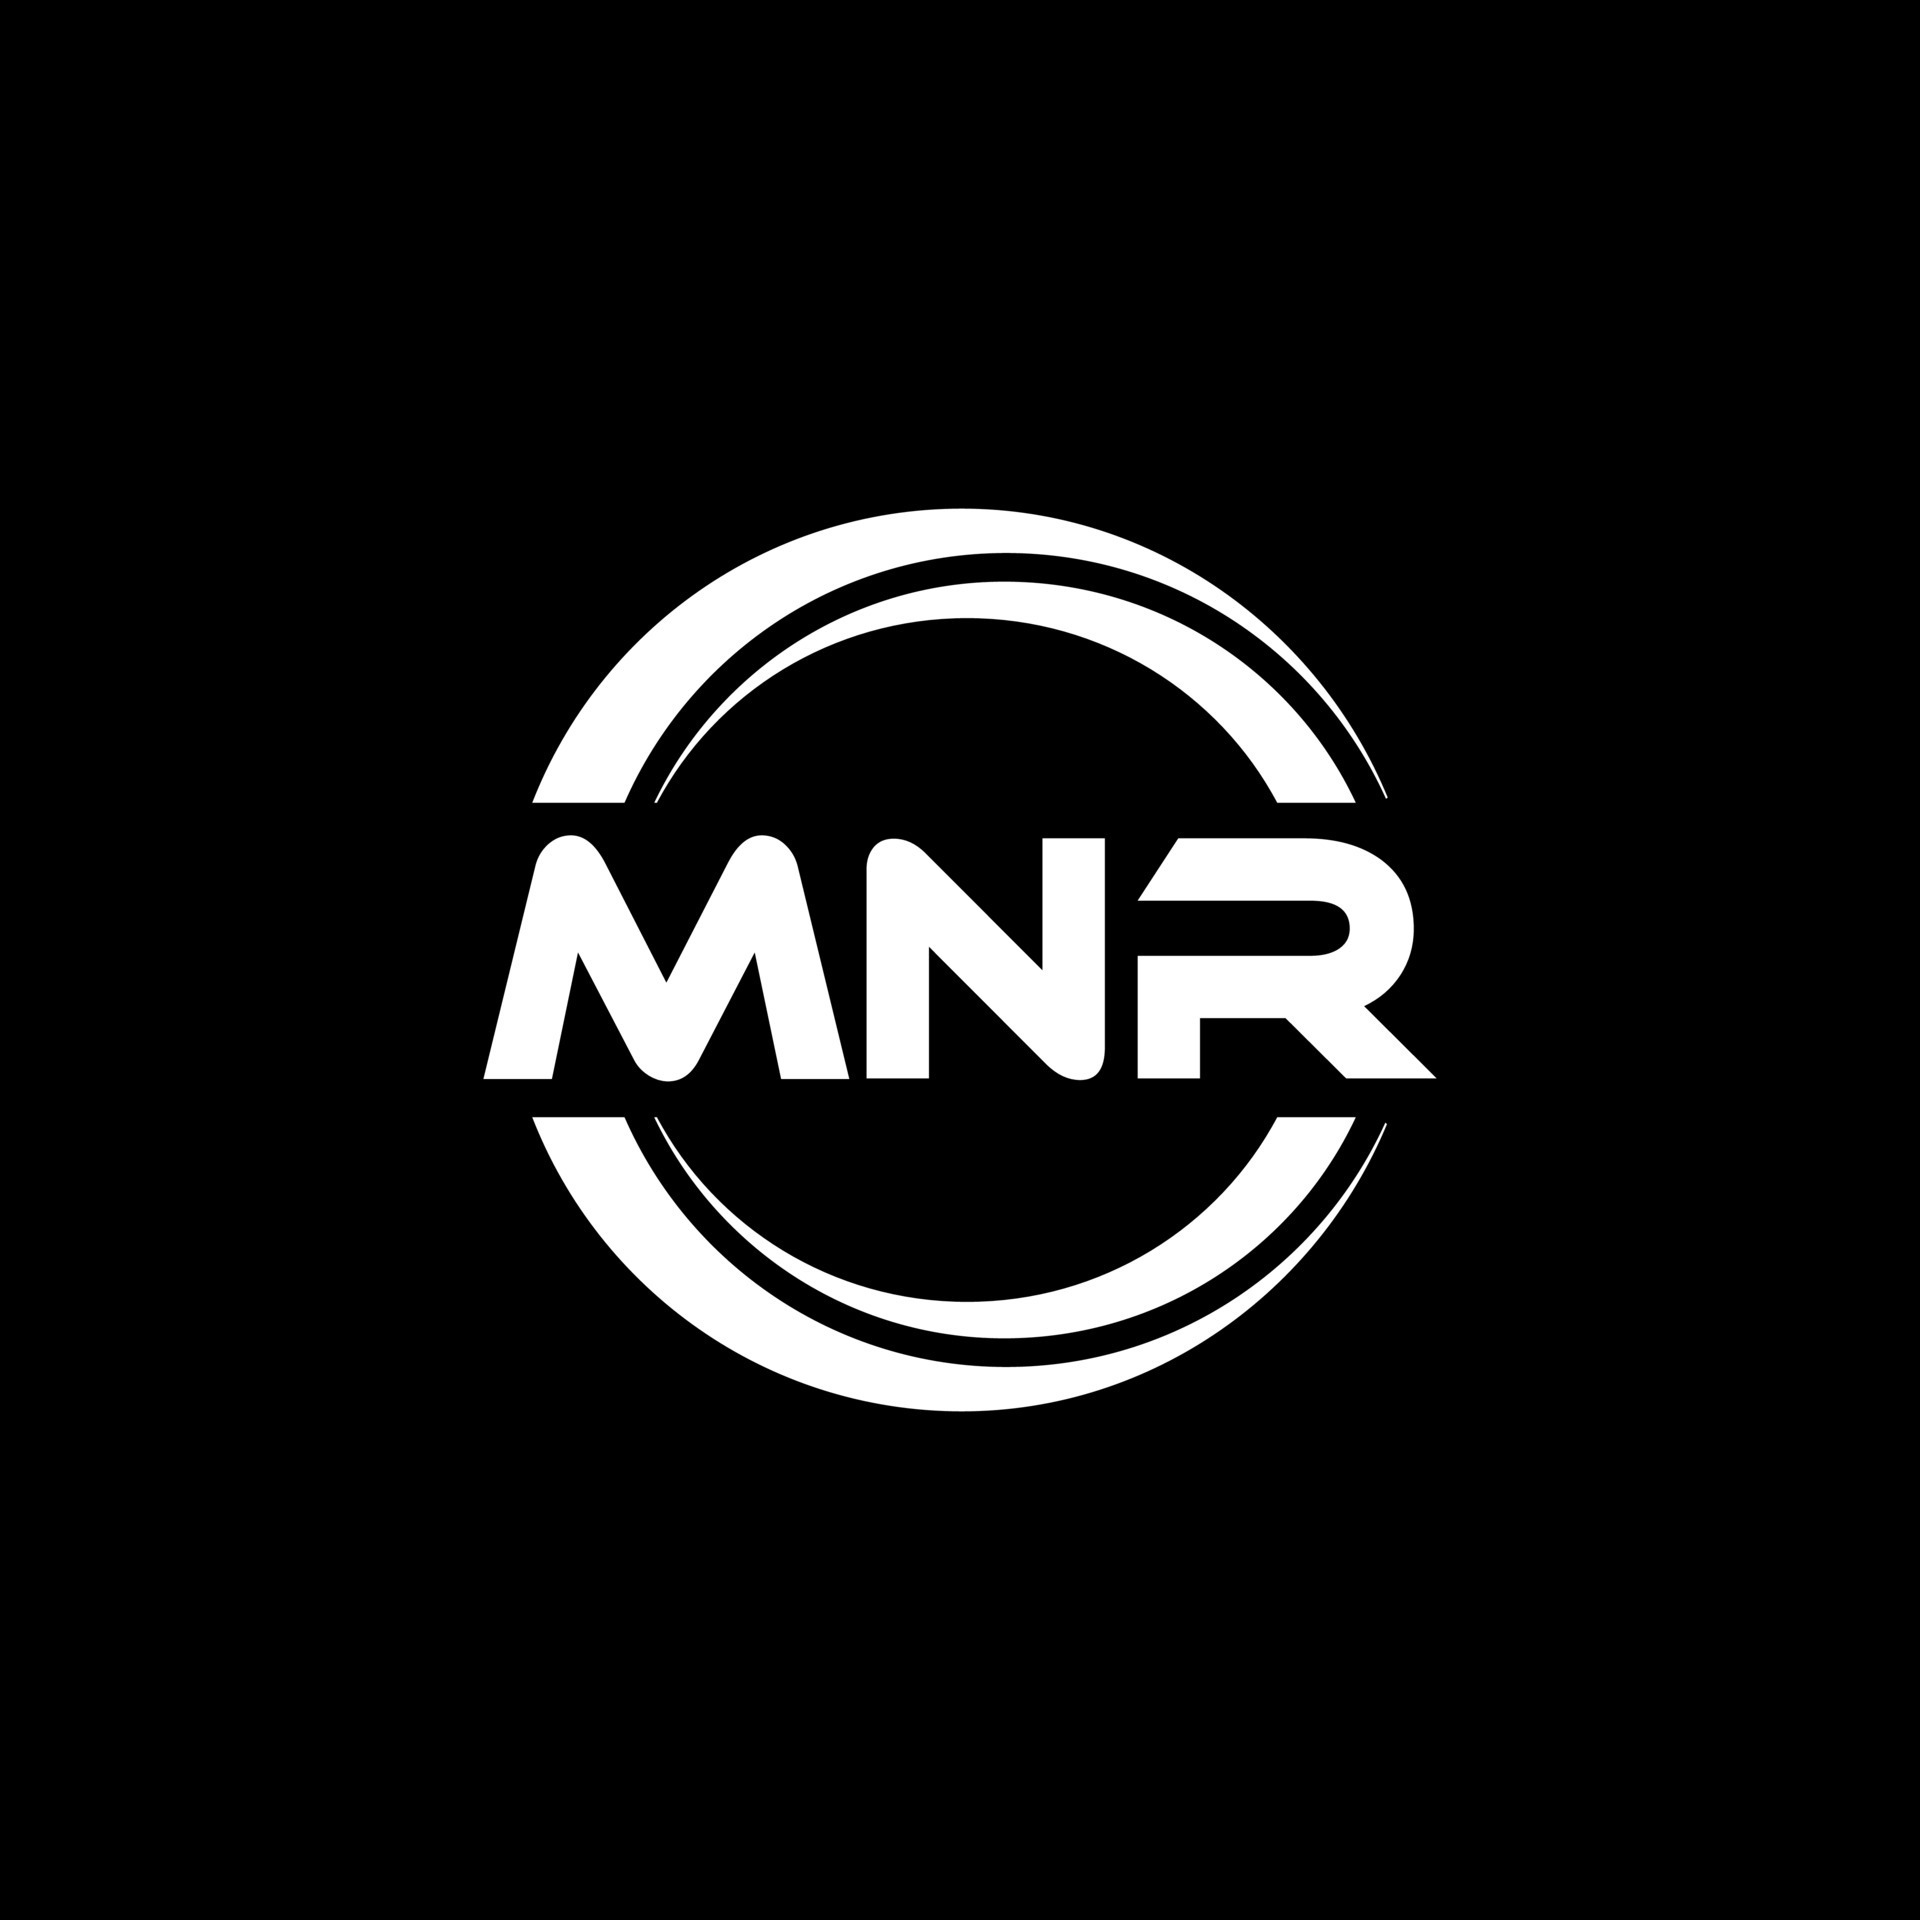 MNR Logo PNG Vector (SVG) Free Download